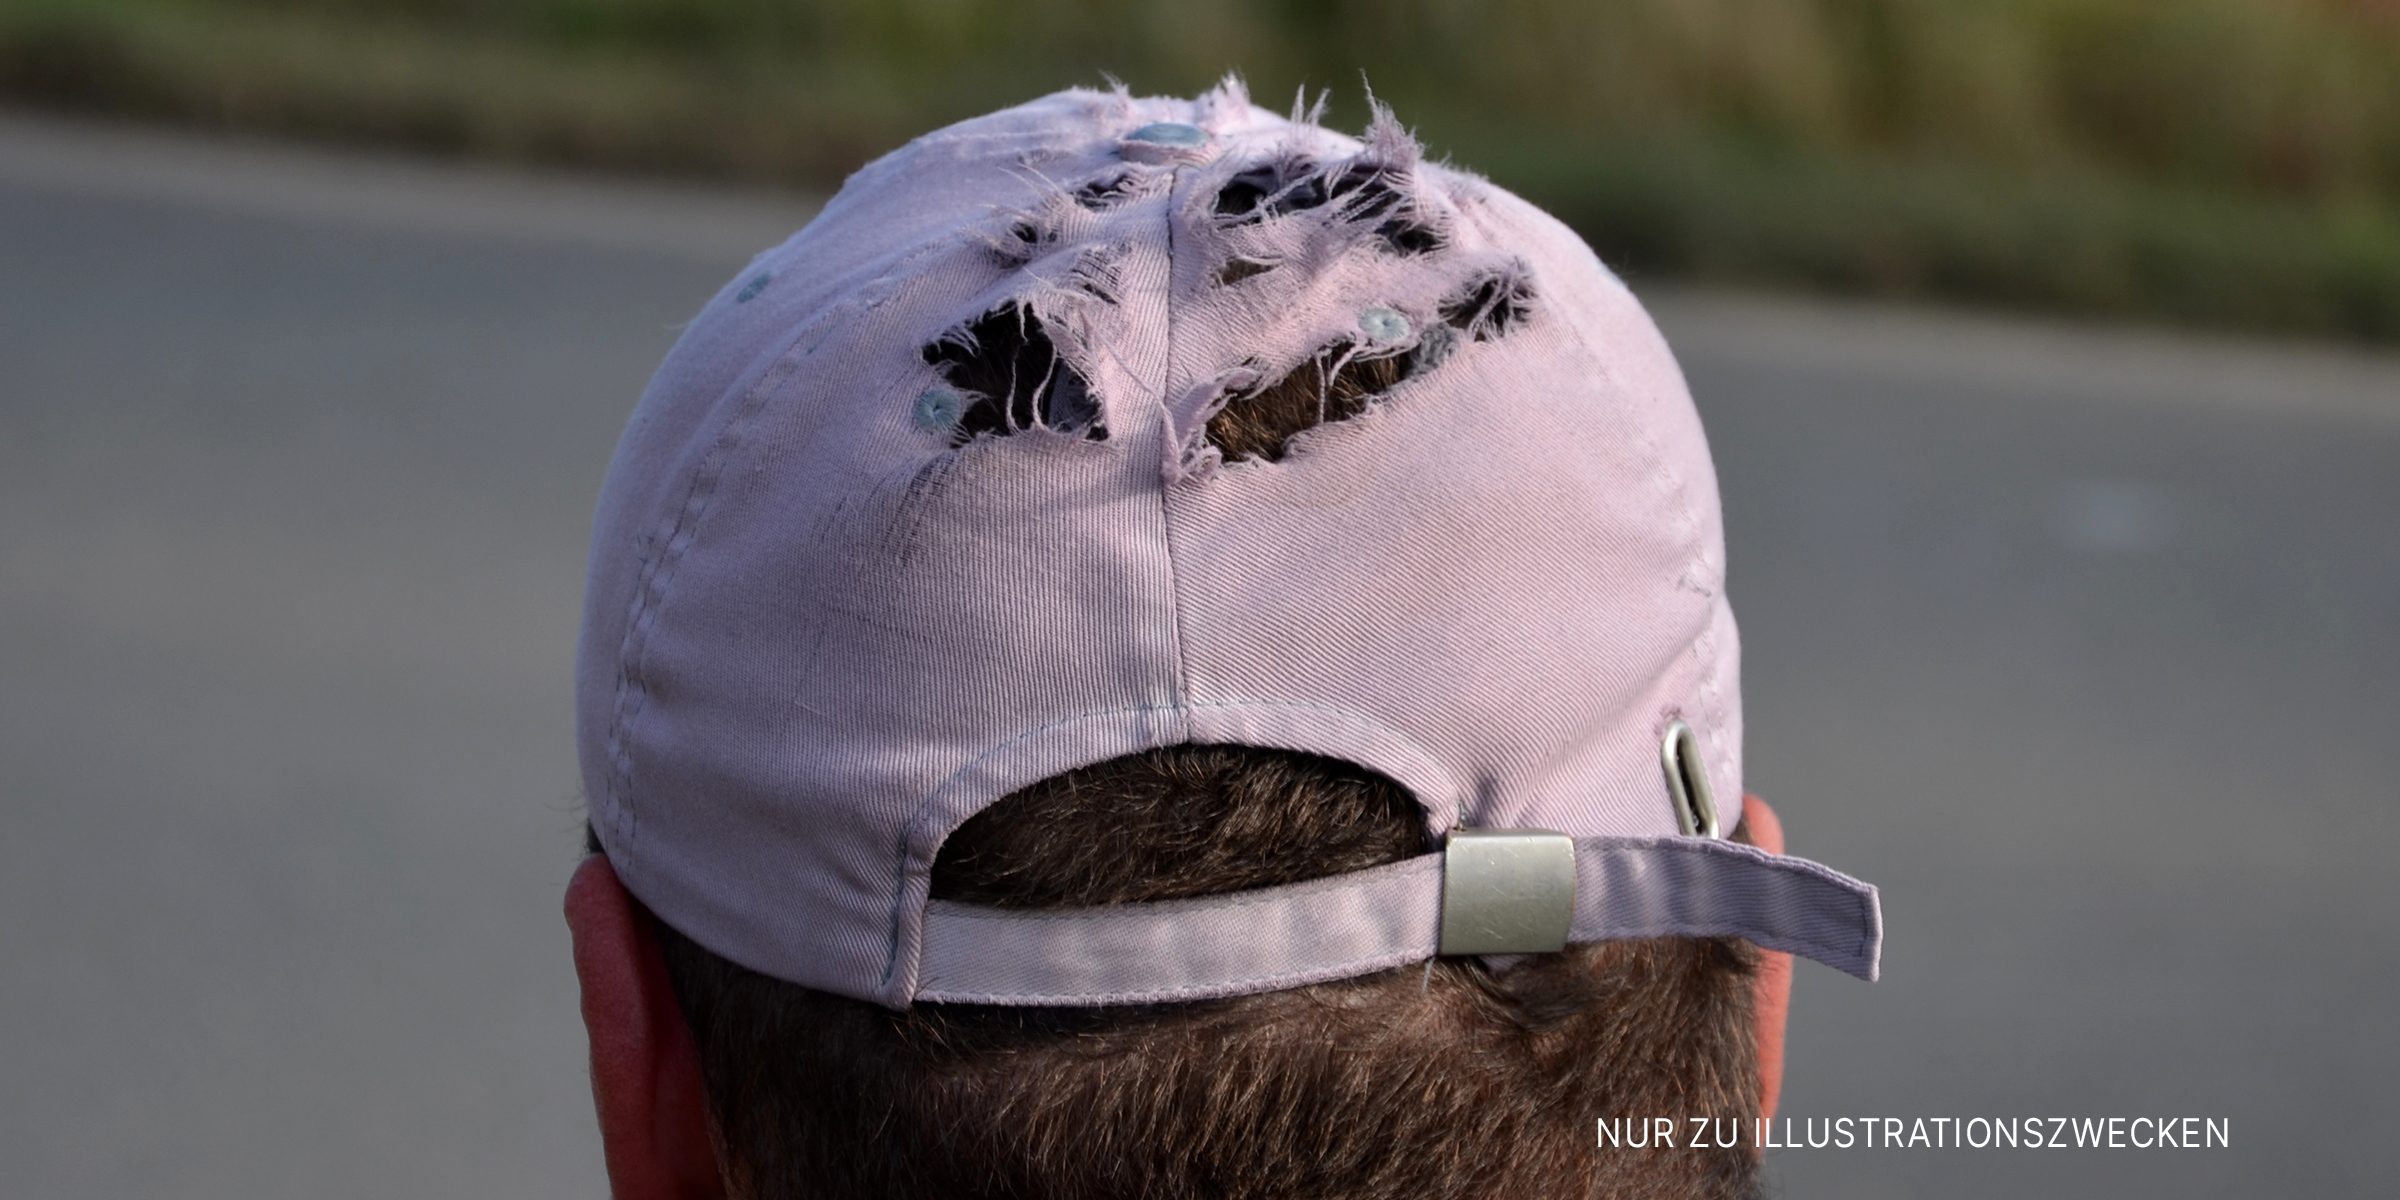 Zerrissene Baseballkappe auf dem Kopf eines Mannes | Quelle: Shutterstock